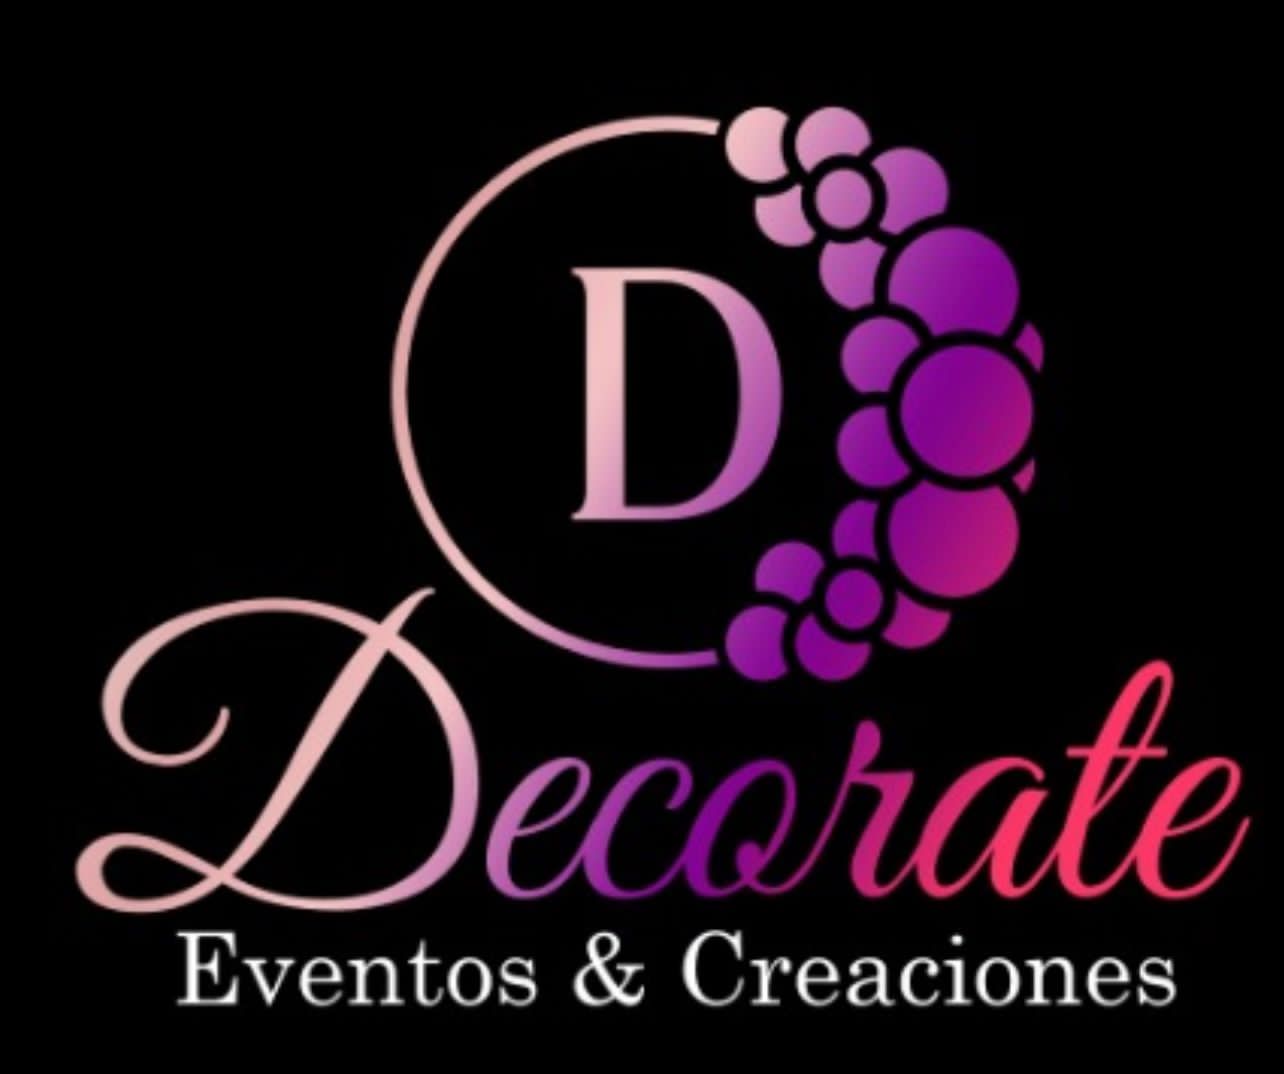 Decorate Eventos & Creaciones